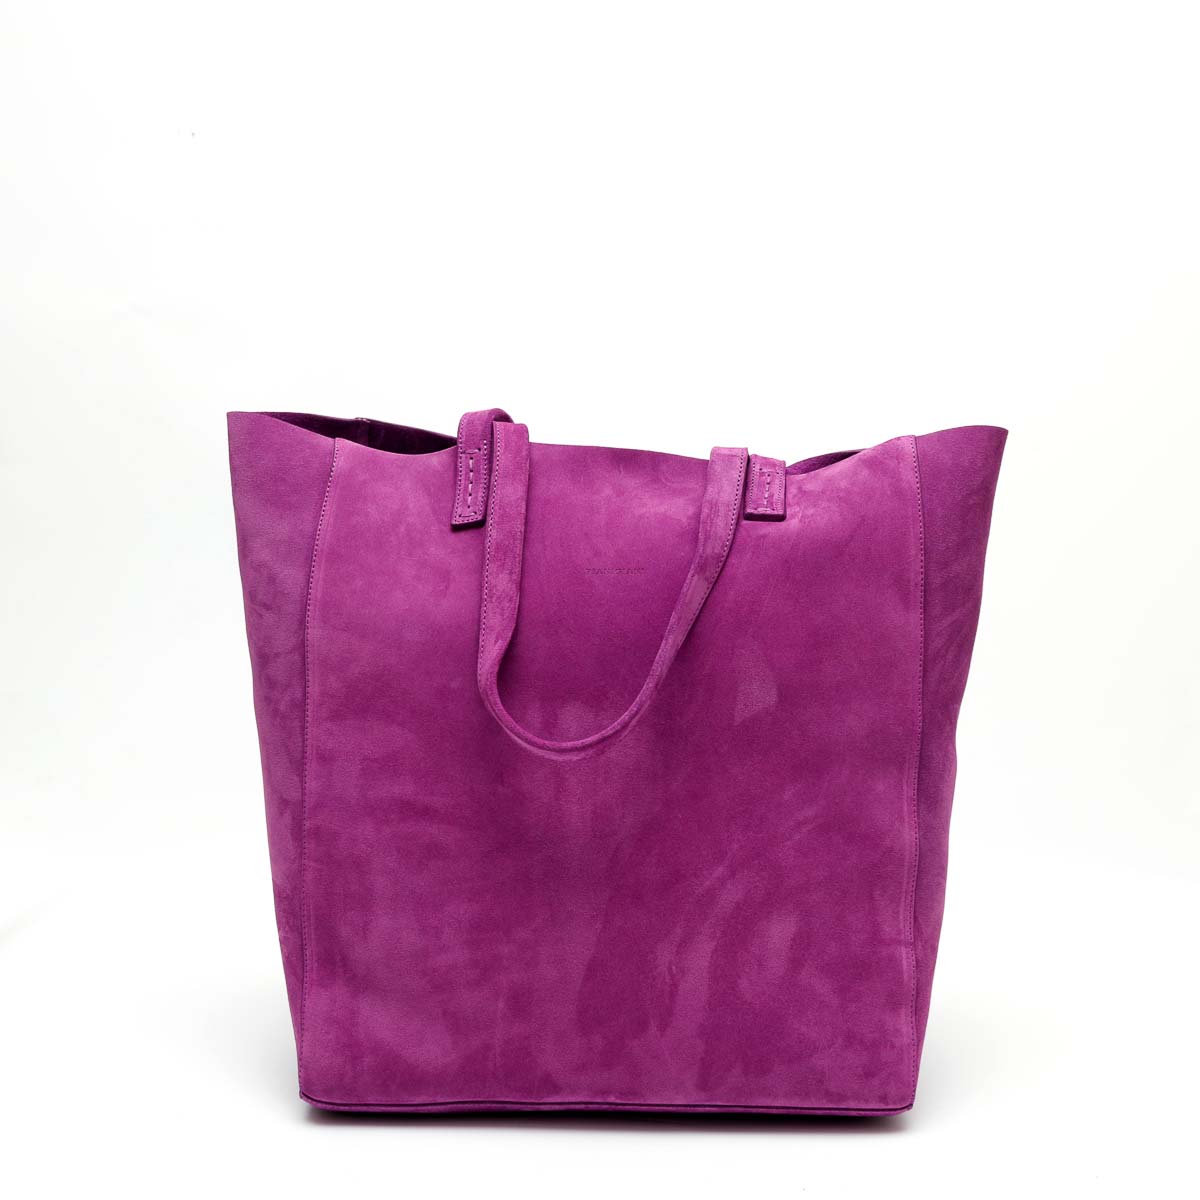 Basket Bag - Lavender - Smooth Leather